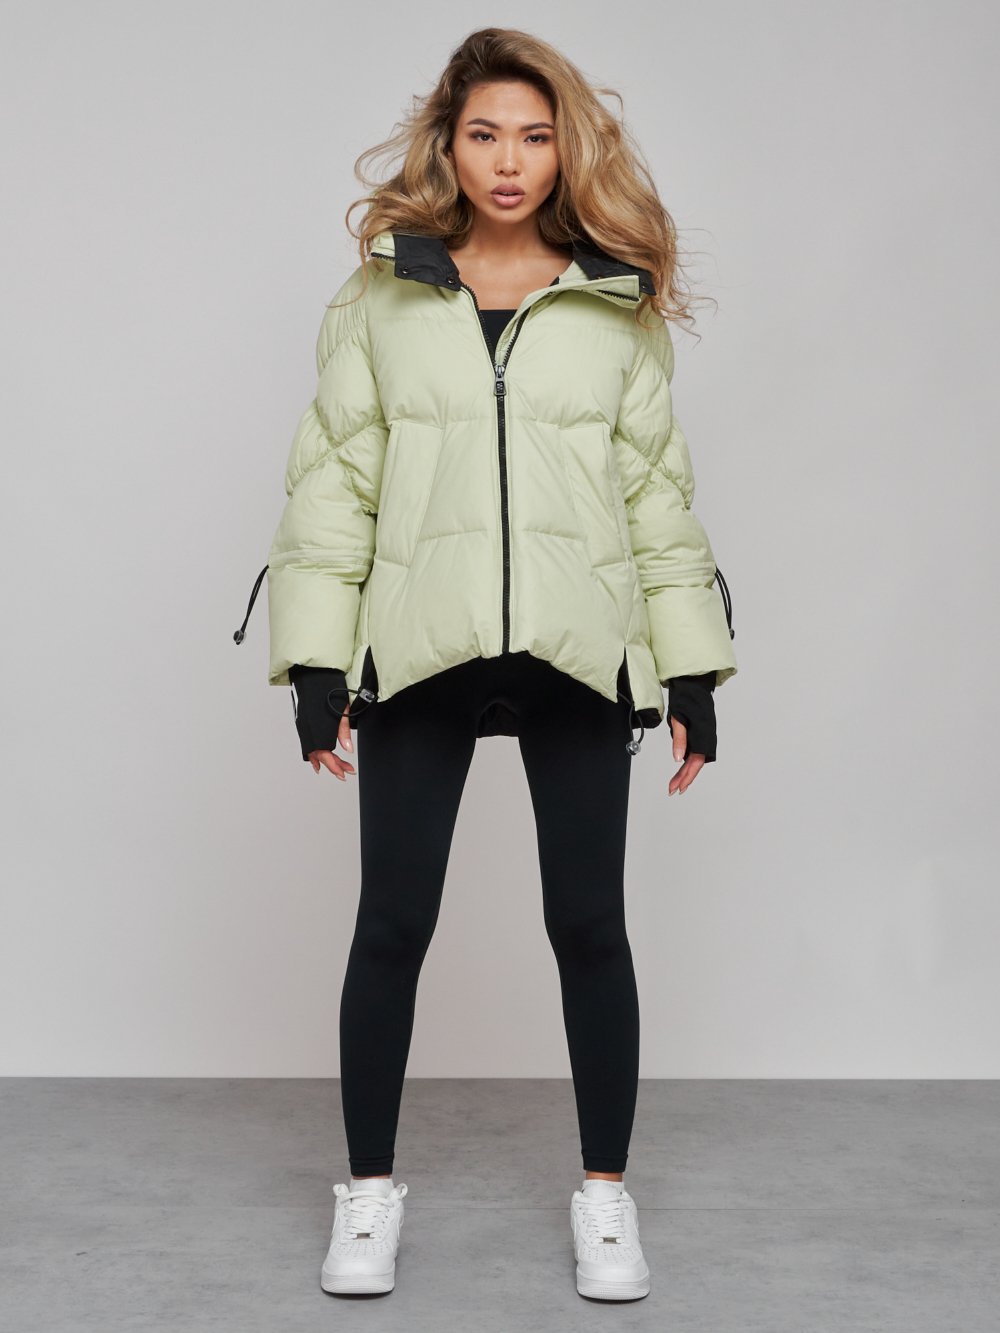 Купить куртку зимнюю оптом от производителя недорого в Москве 52306Sl